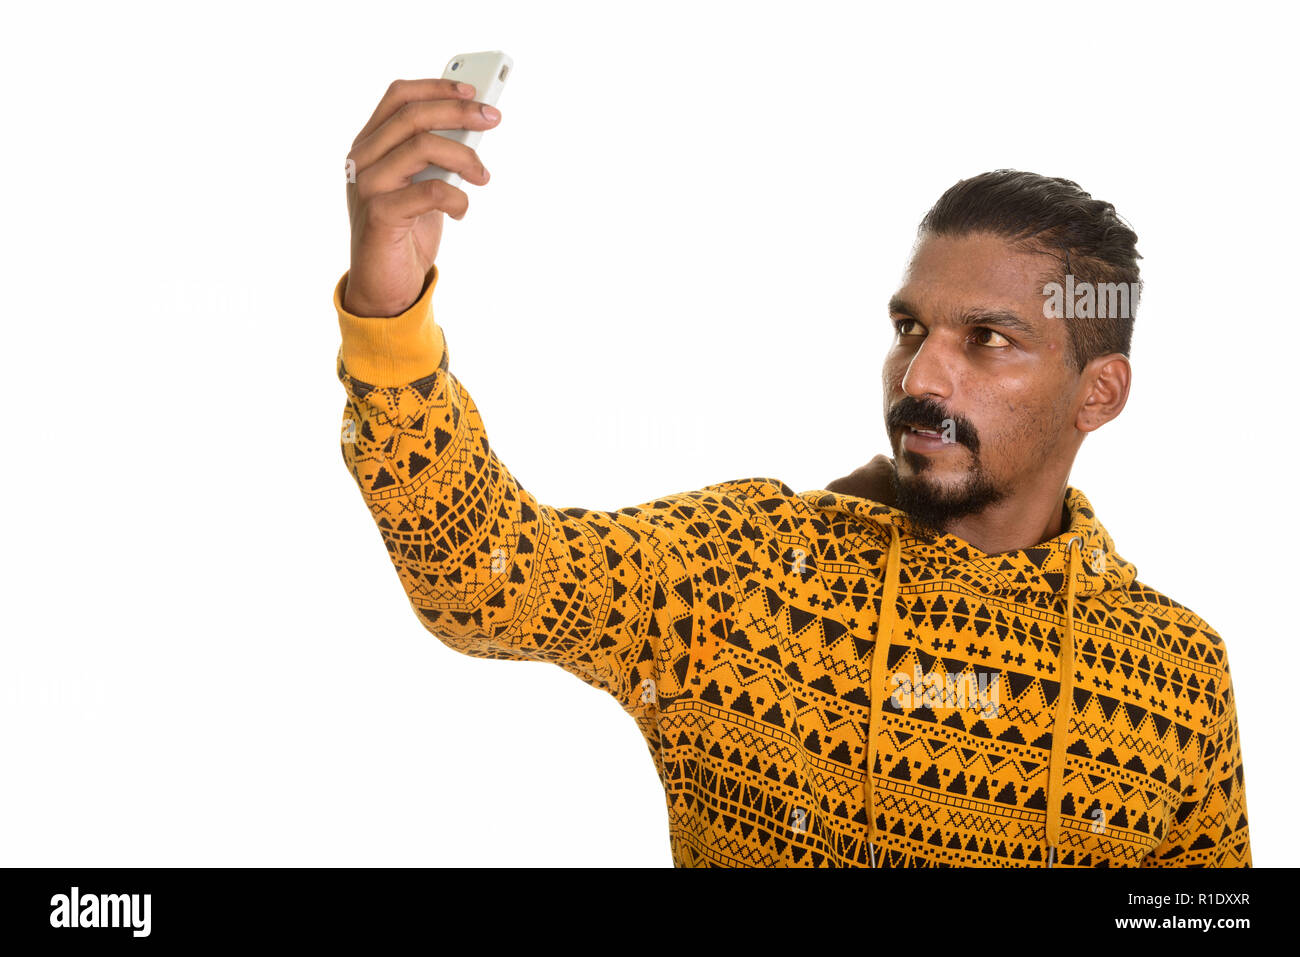 Xxx indian selfie